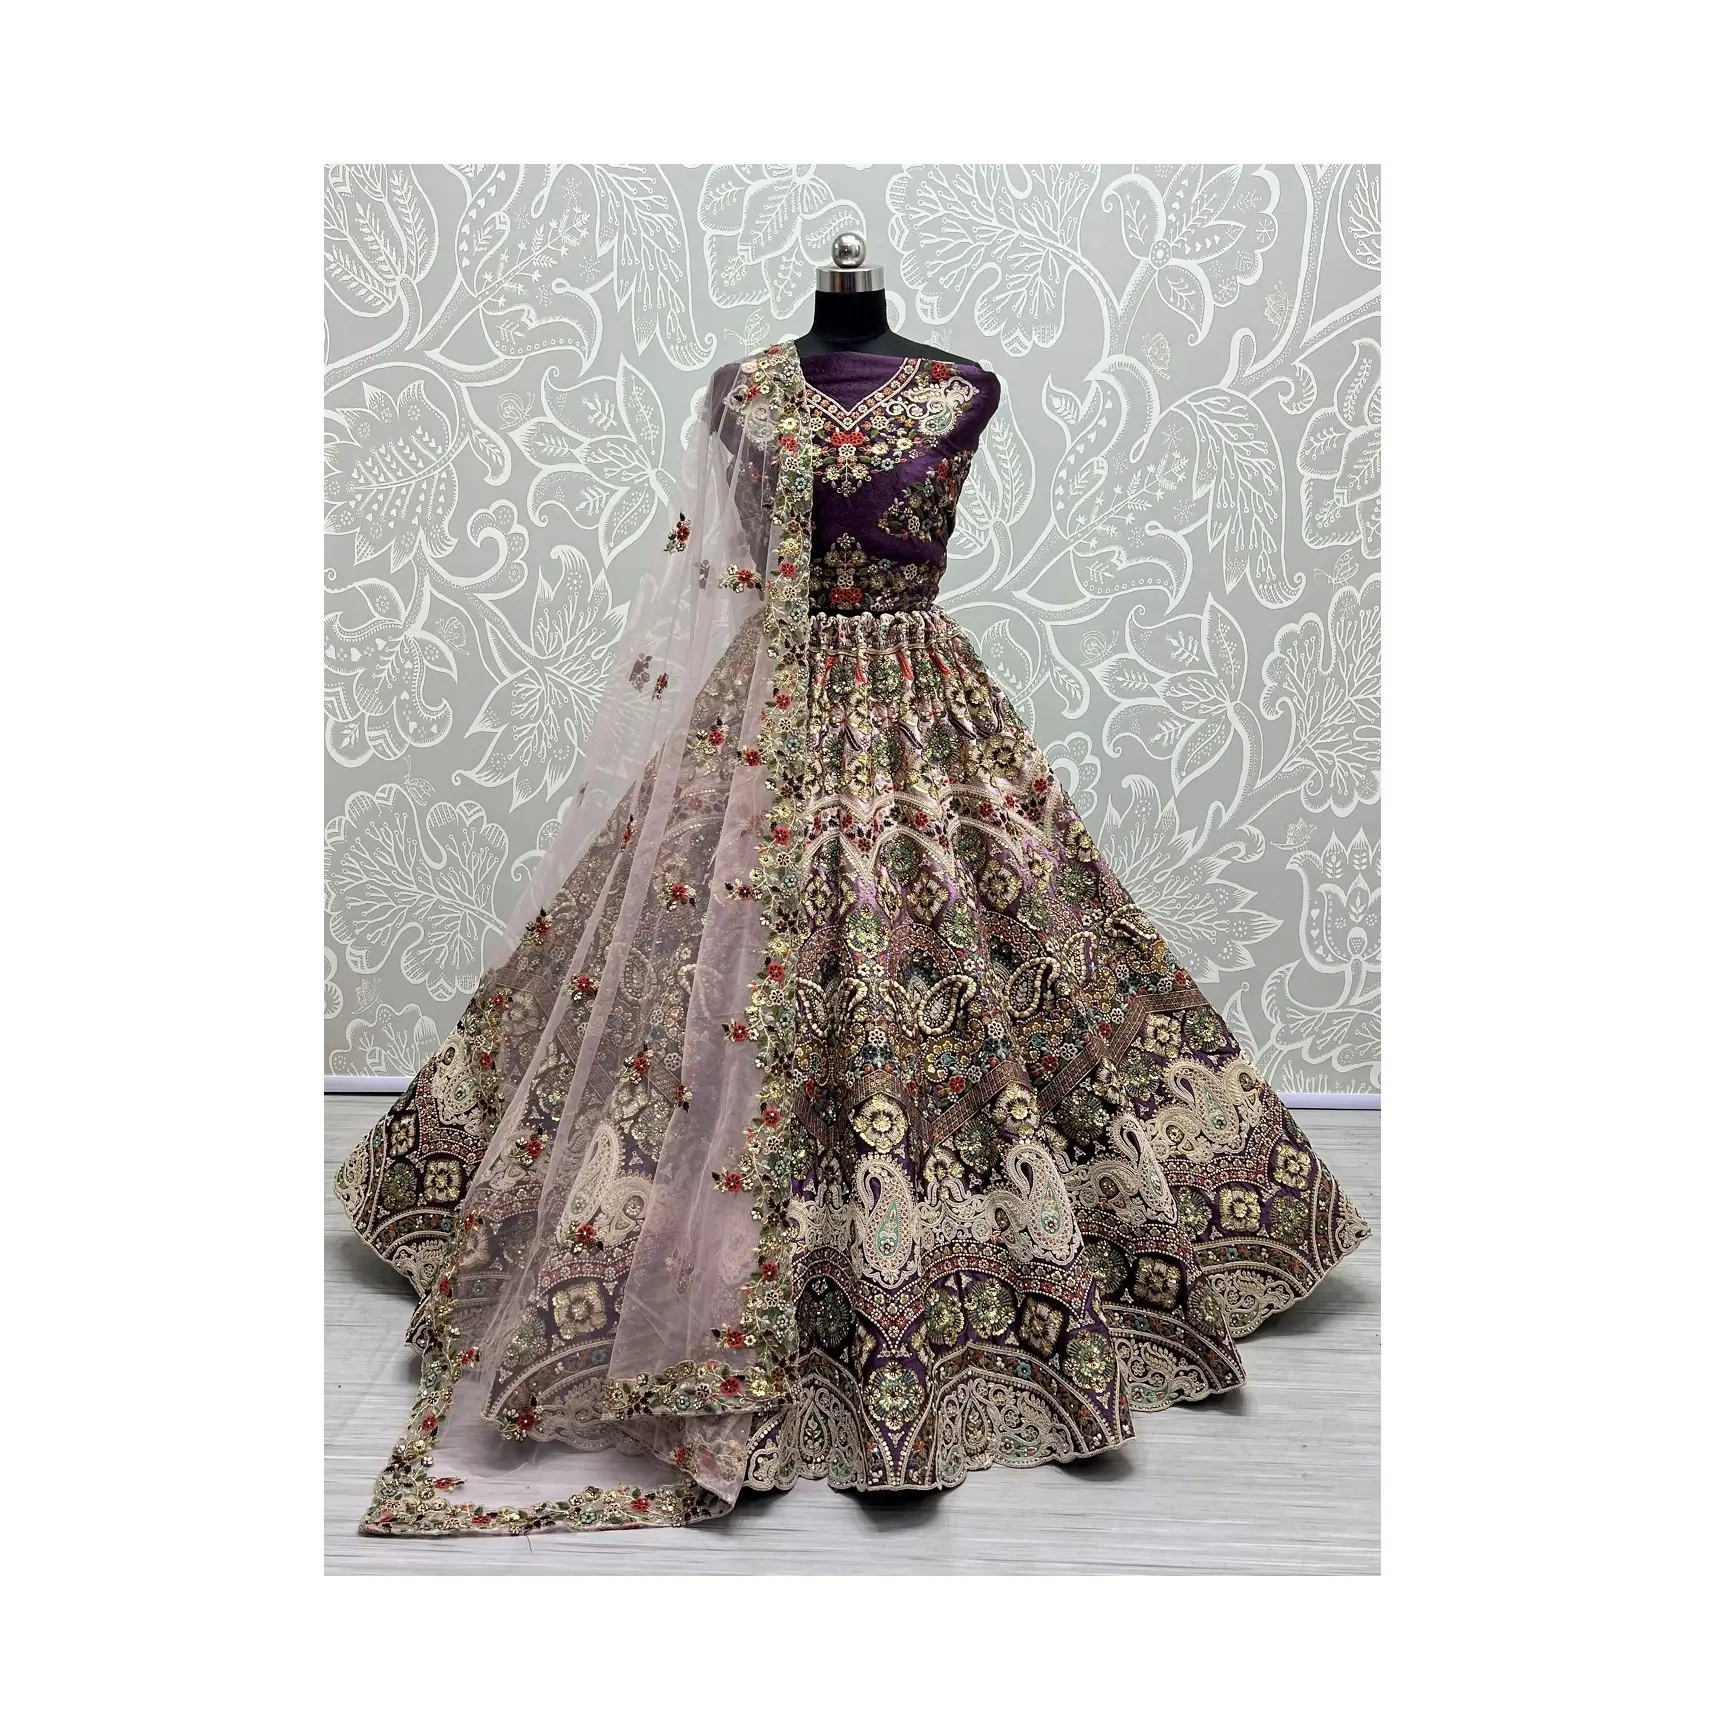 Exclusivo Designer Partywear Coleção De Casamento Lehenga Choli Navratri Bollywood Estilo Lehenga Choli para Mulheres